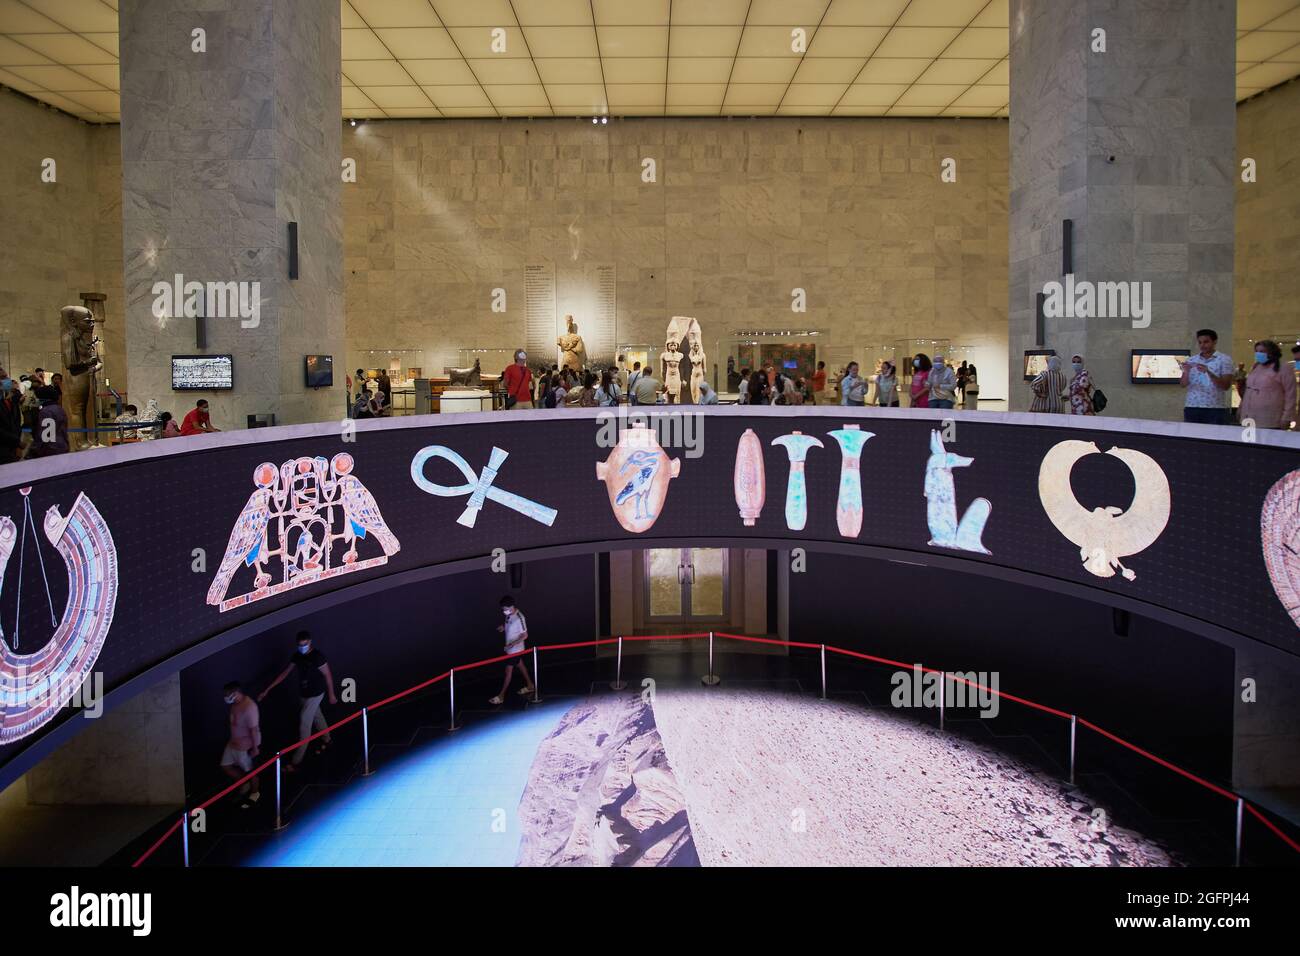 Le musée national de la civilisation égyptienne (NMEC) au Caire, en Égypte photo de l'intérieur montrant le hall principal avec des visiteurs à l'intérieur Banque D'Images